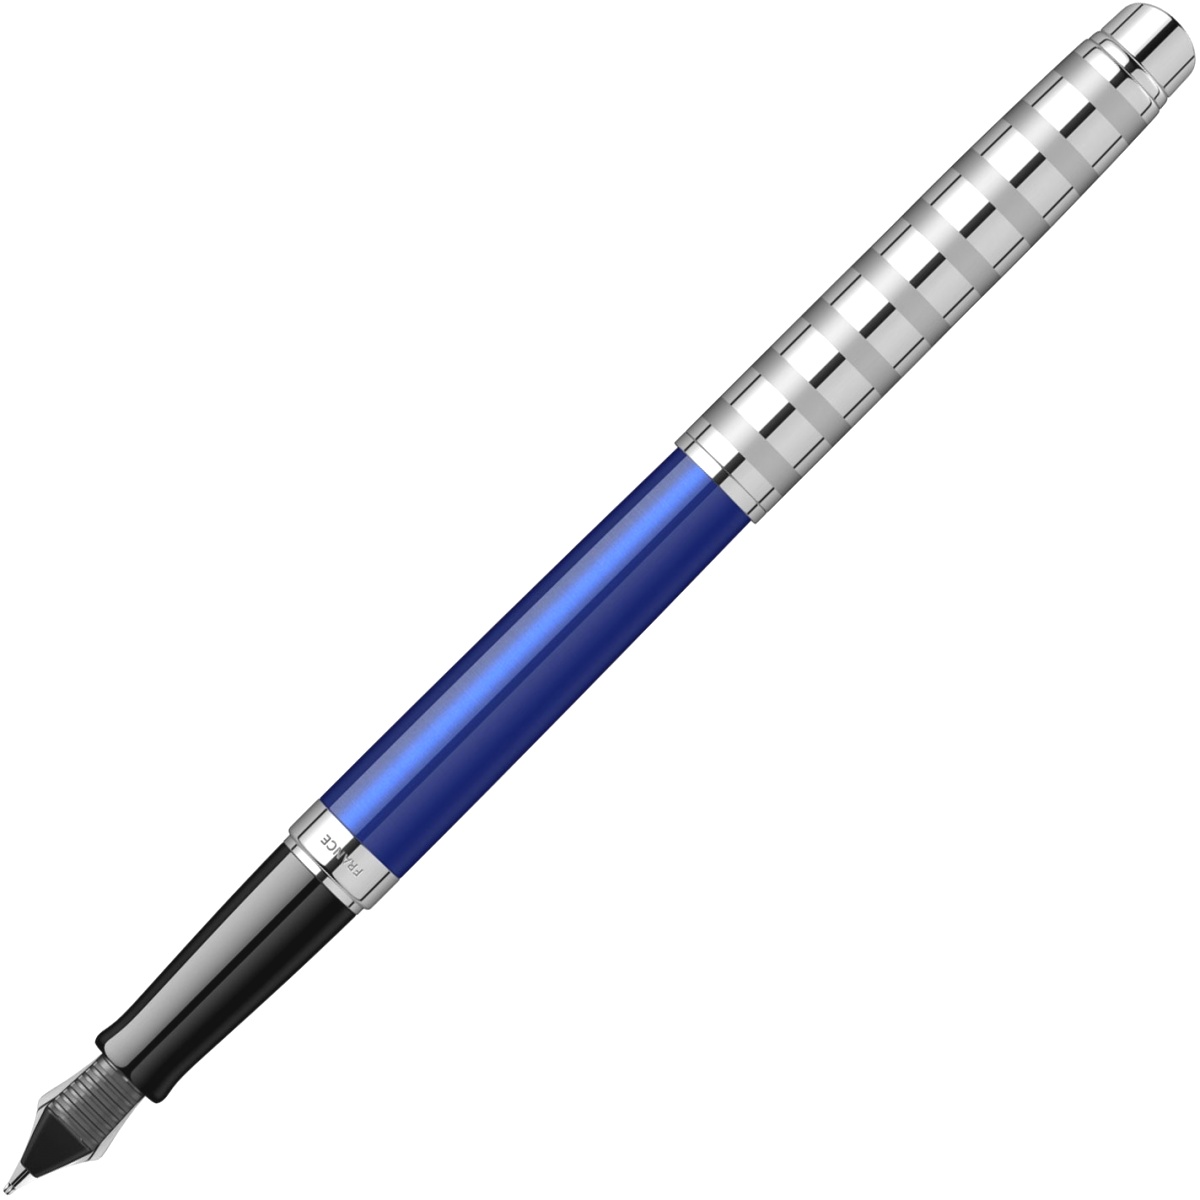  Ручка перьевая Waterman Hemisphere Deluxe 2020, Marine Blue CT (Перо F), фото 3